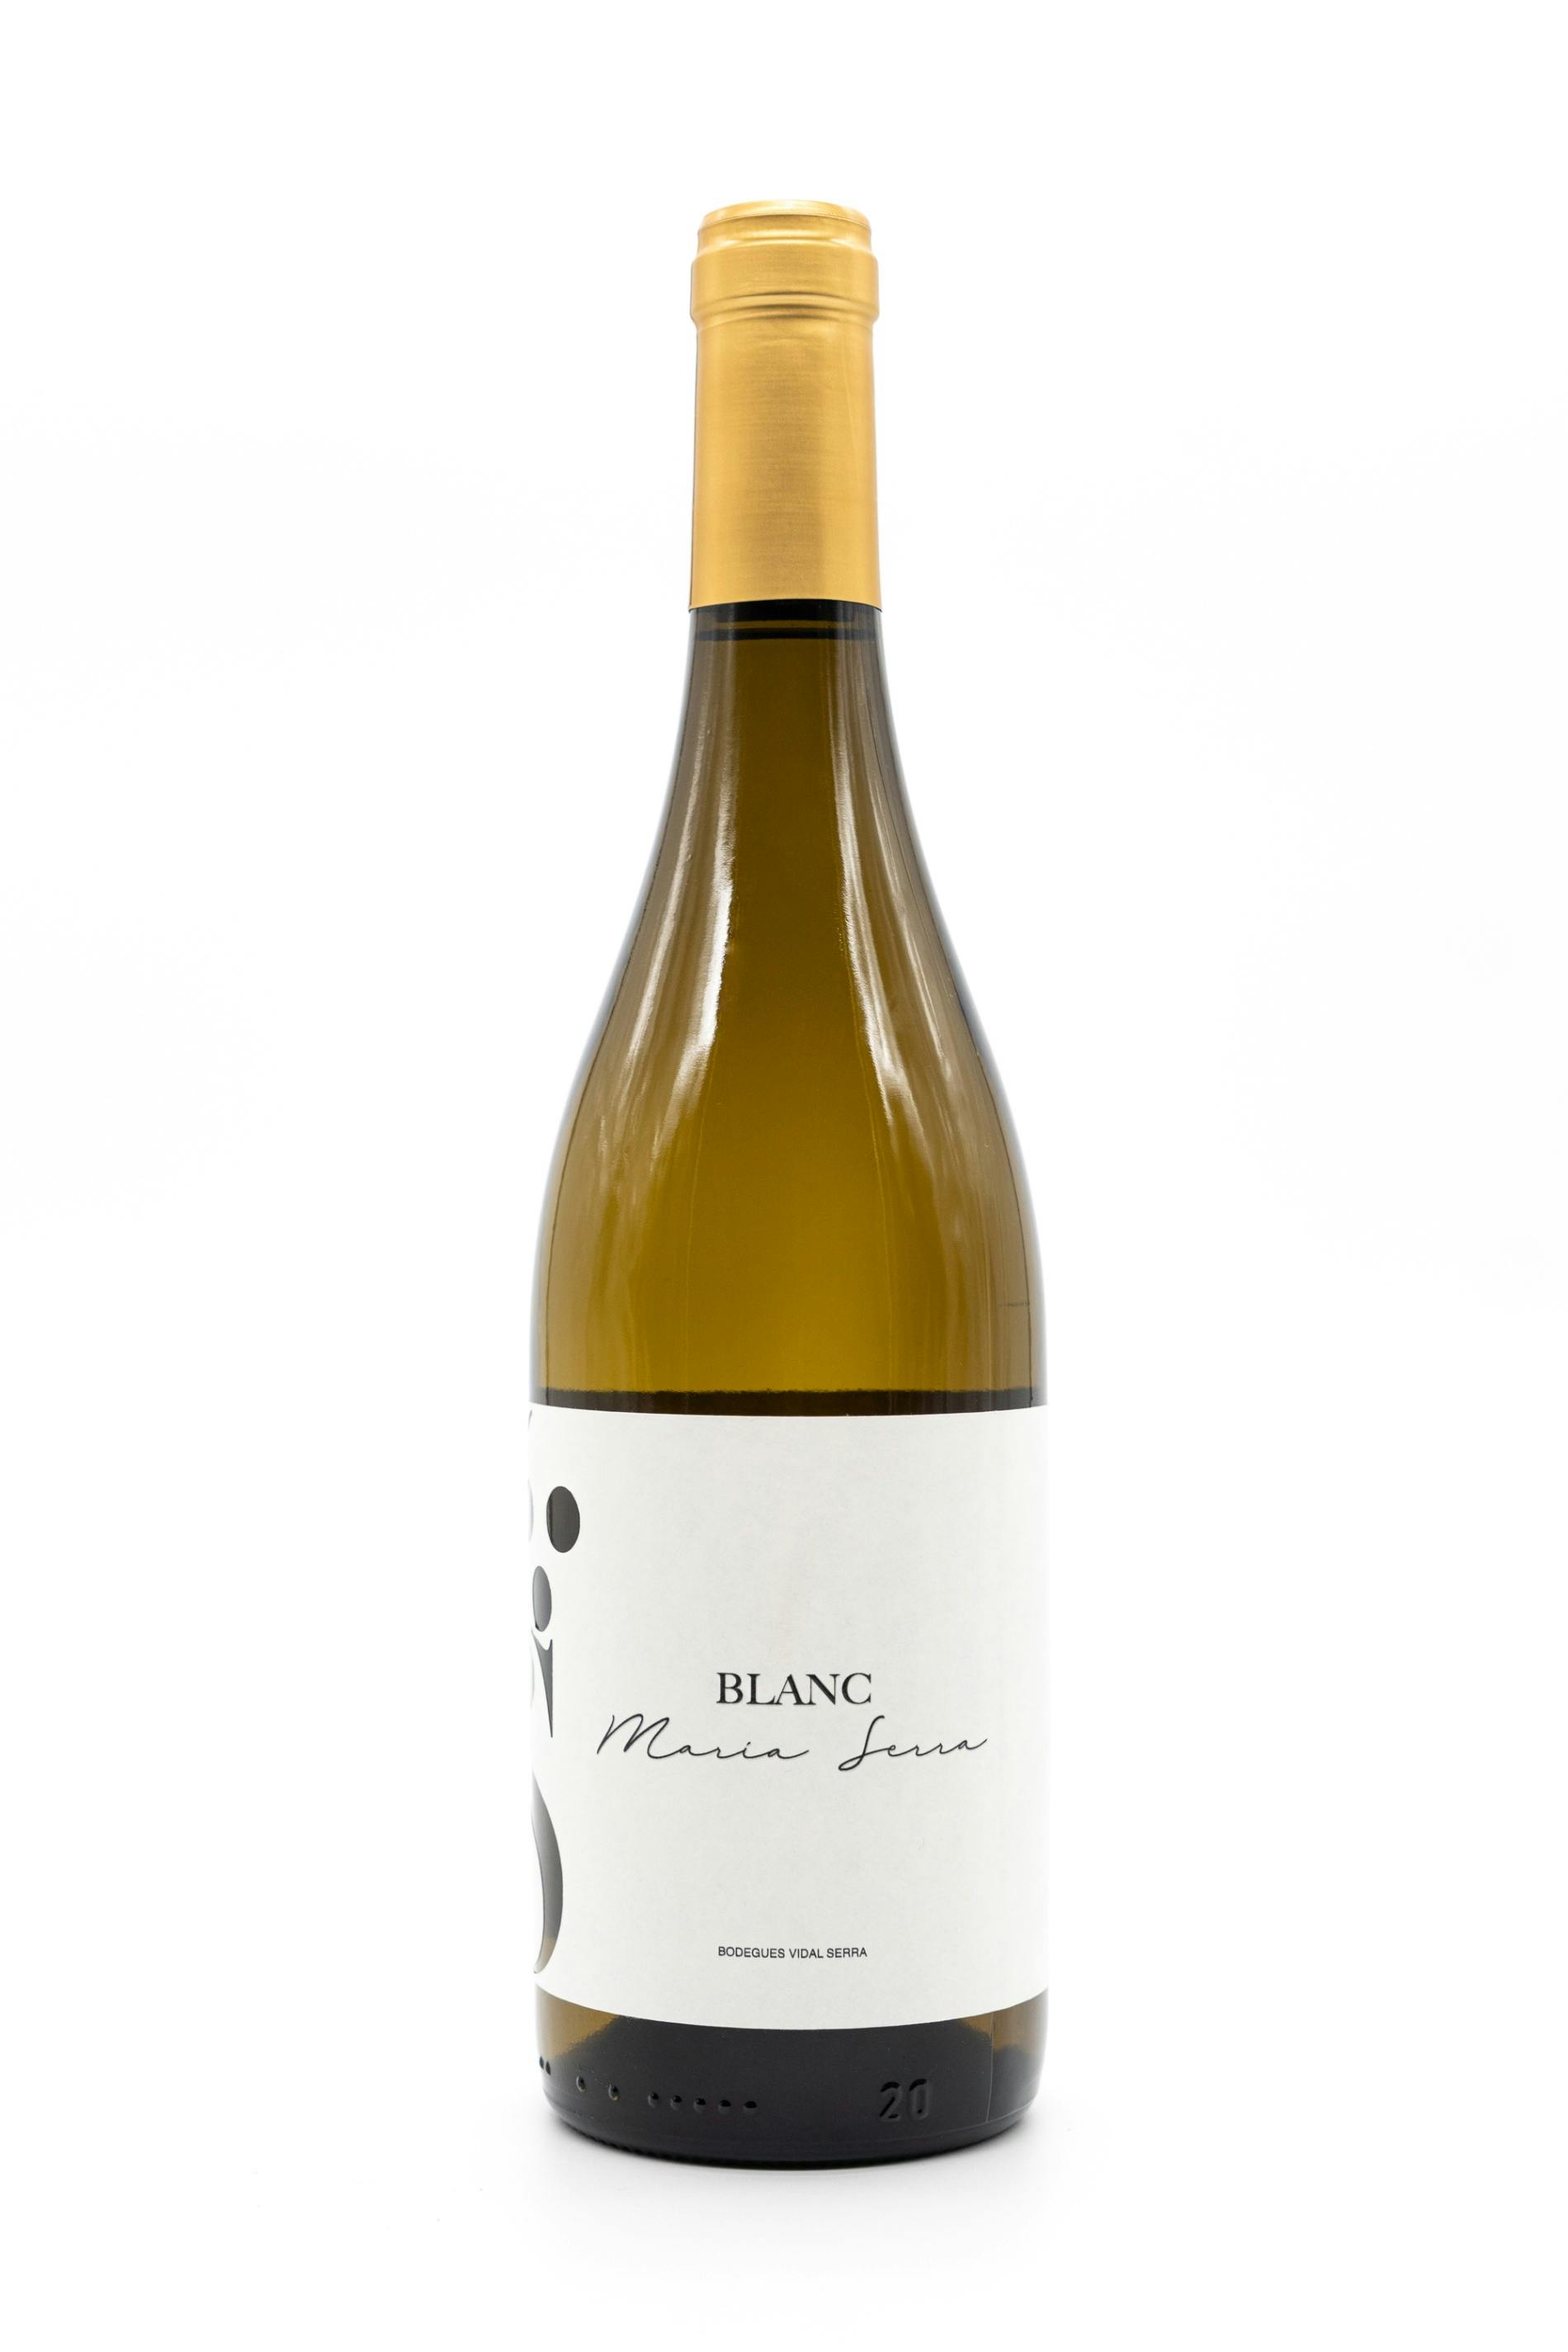 El nostre vi blanc Maria Serra